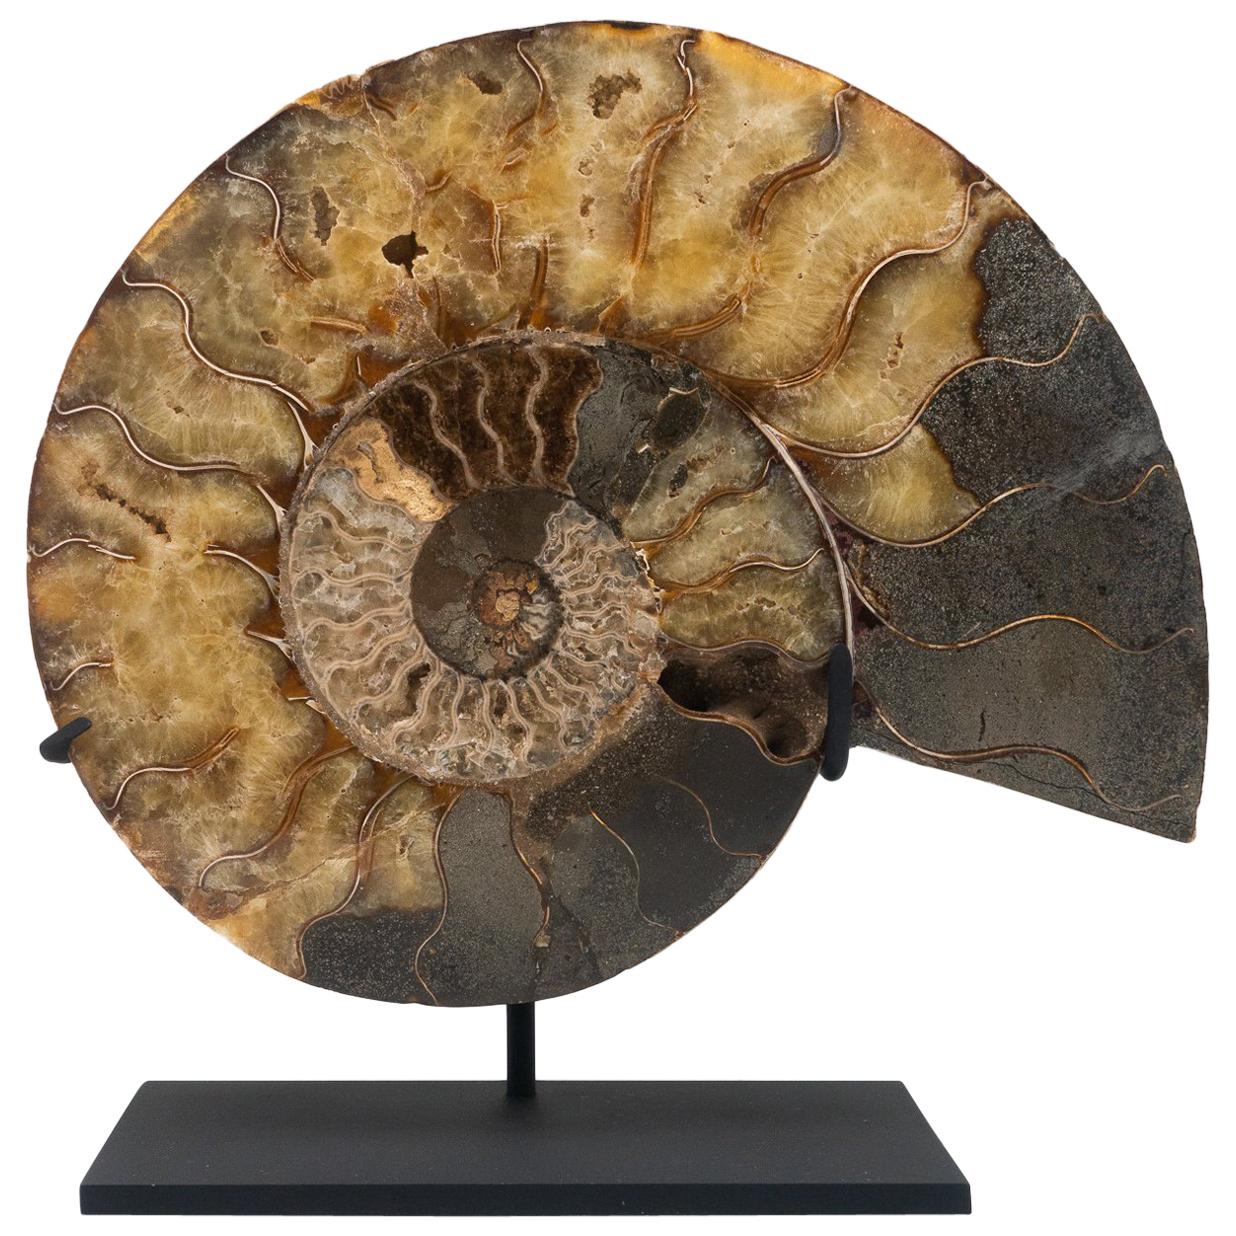 Fossilized Mounted Ammonite Slice on Custom Black Metal Base